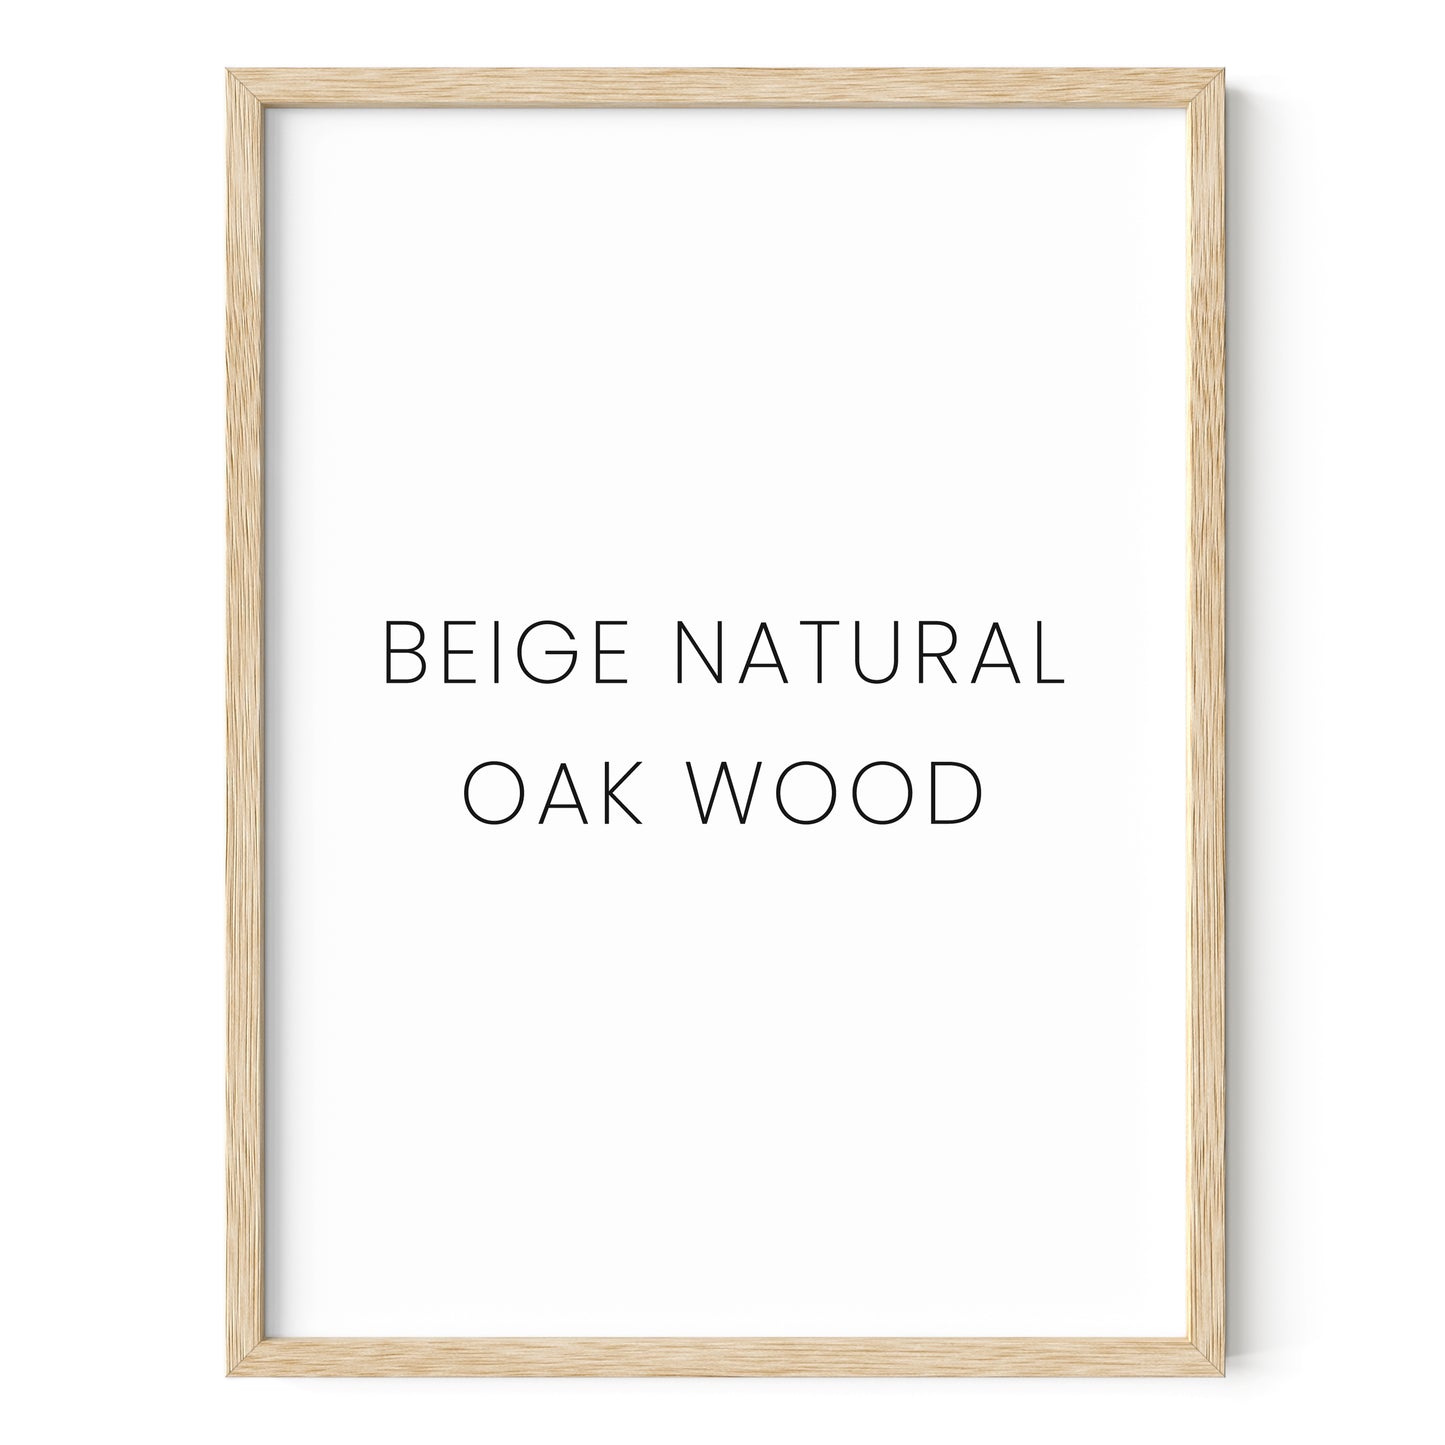 Beige oak